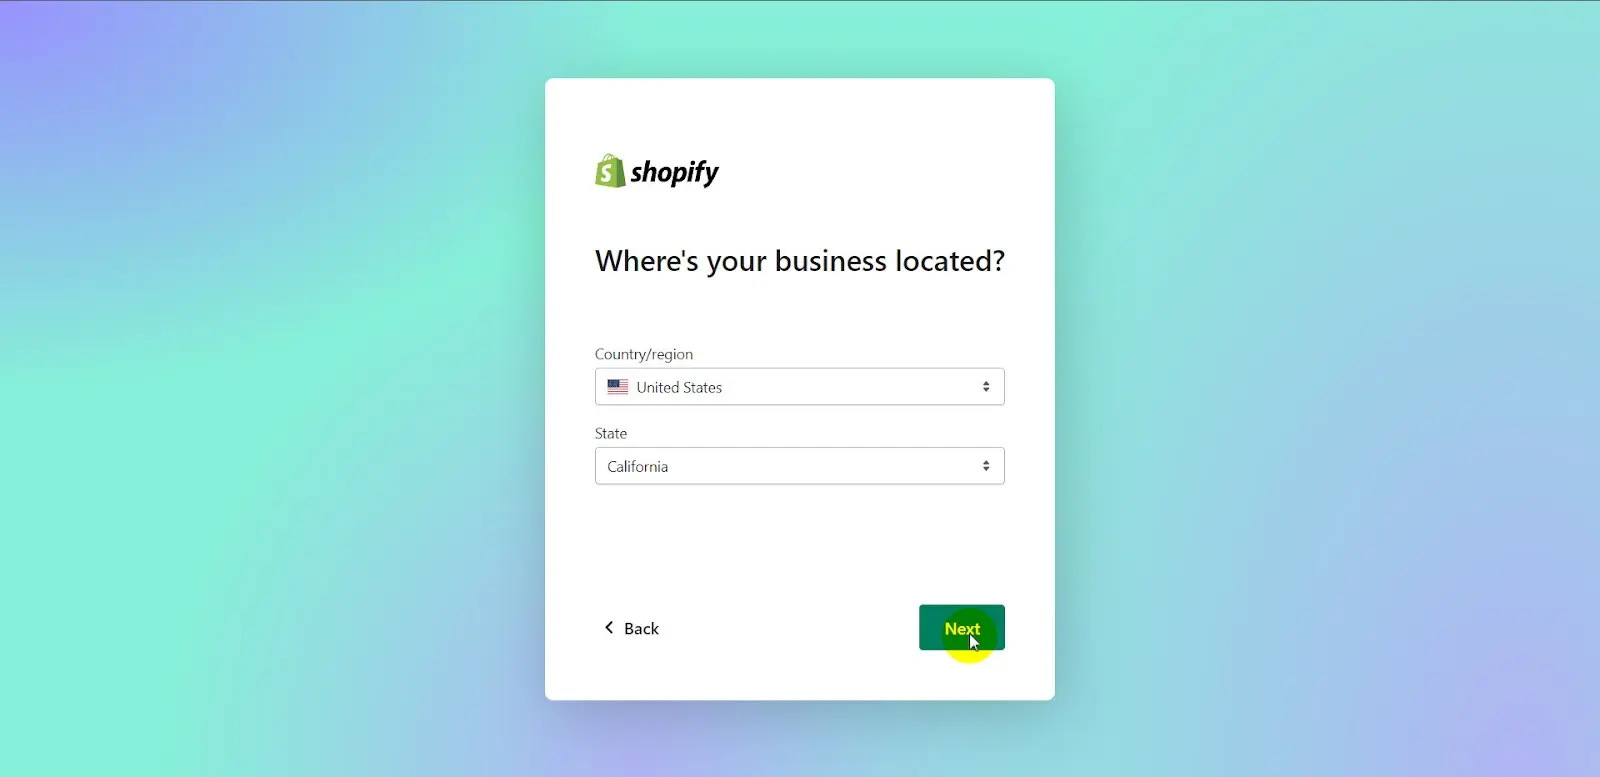 Shopify partner login